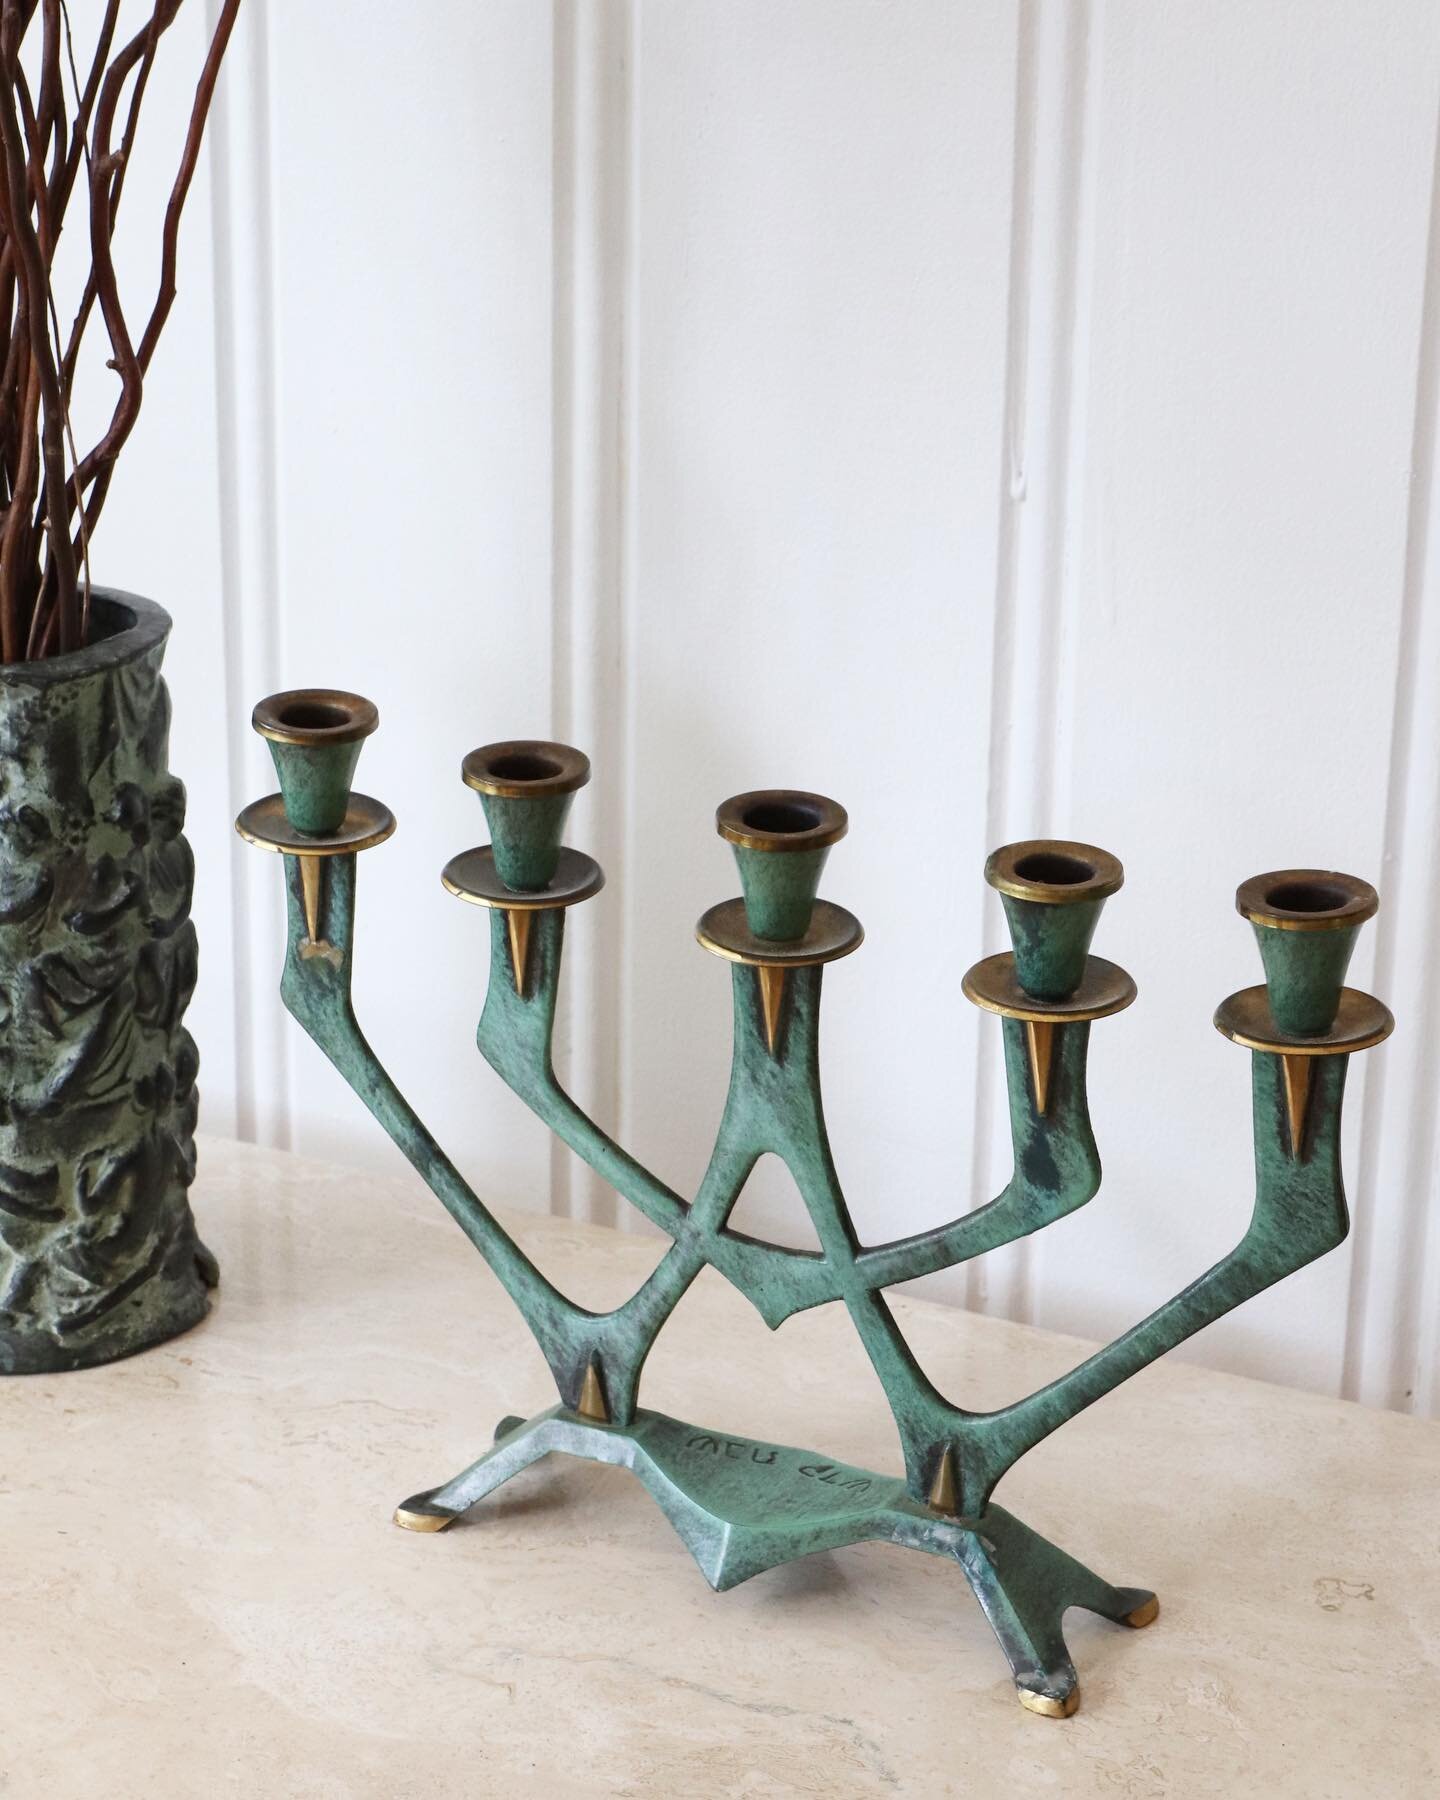 SOLD (presale) Vintage candelabra made in Israel 

#interiordesign #homedecor #art #vintage